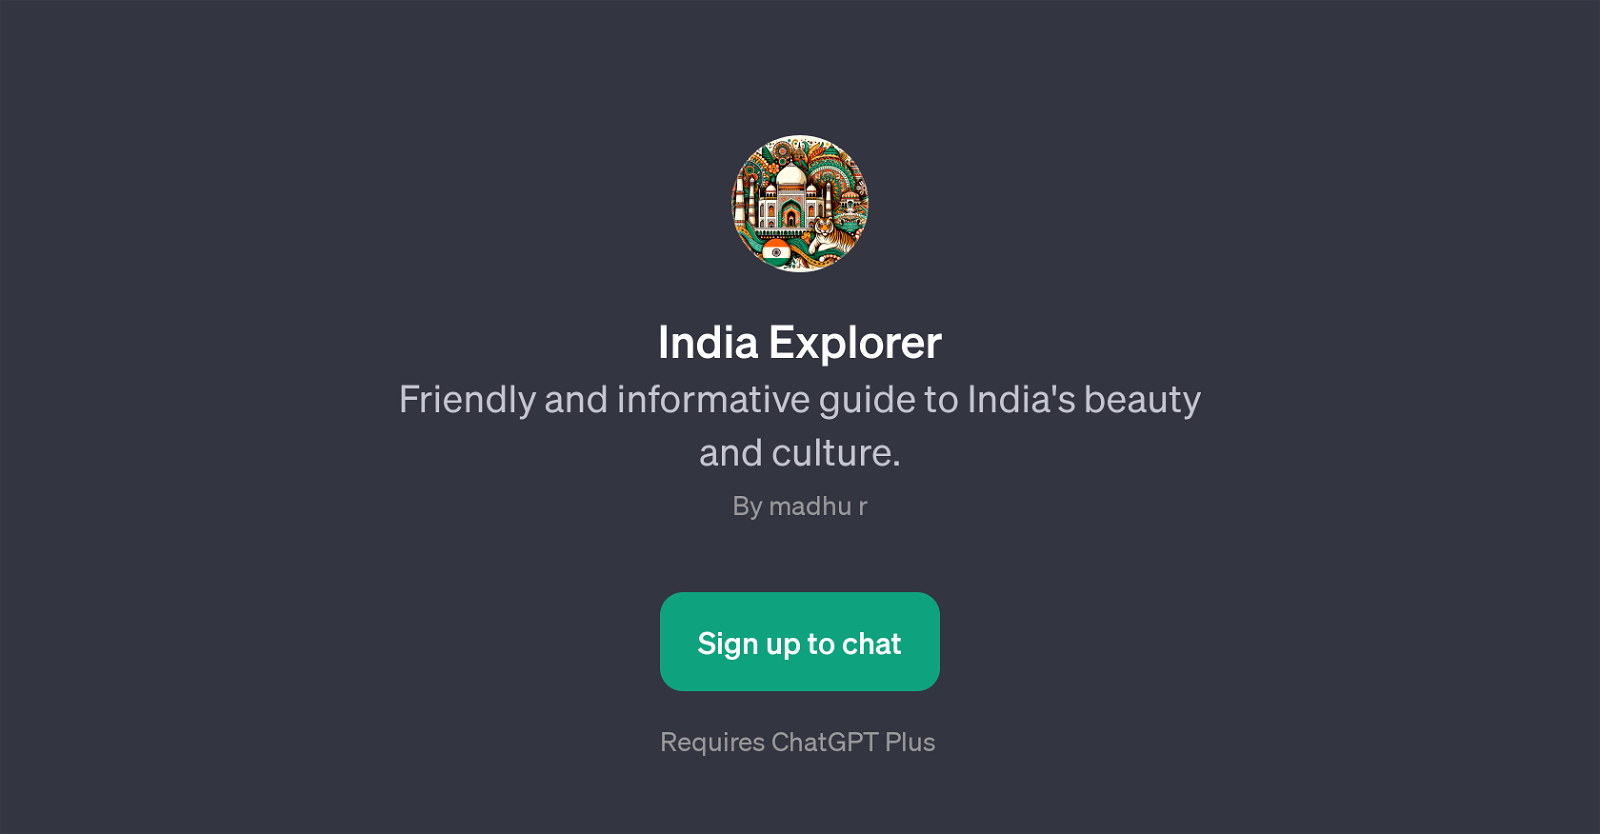 India Explorer website